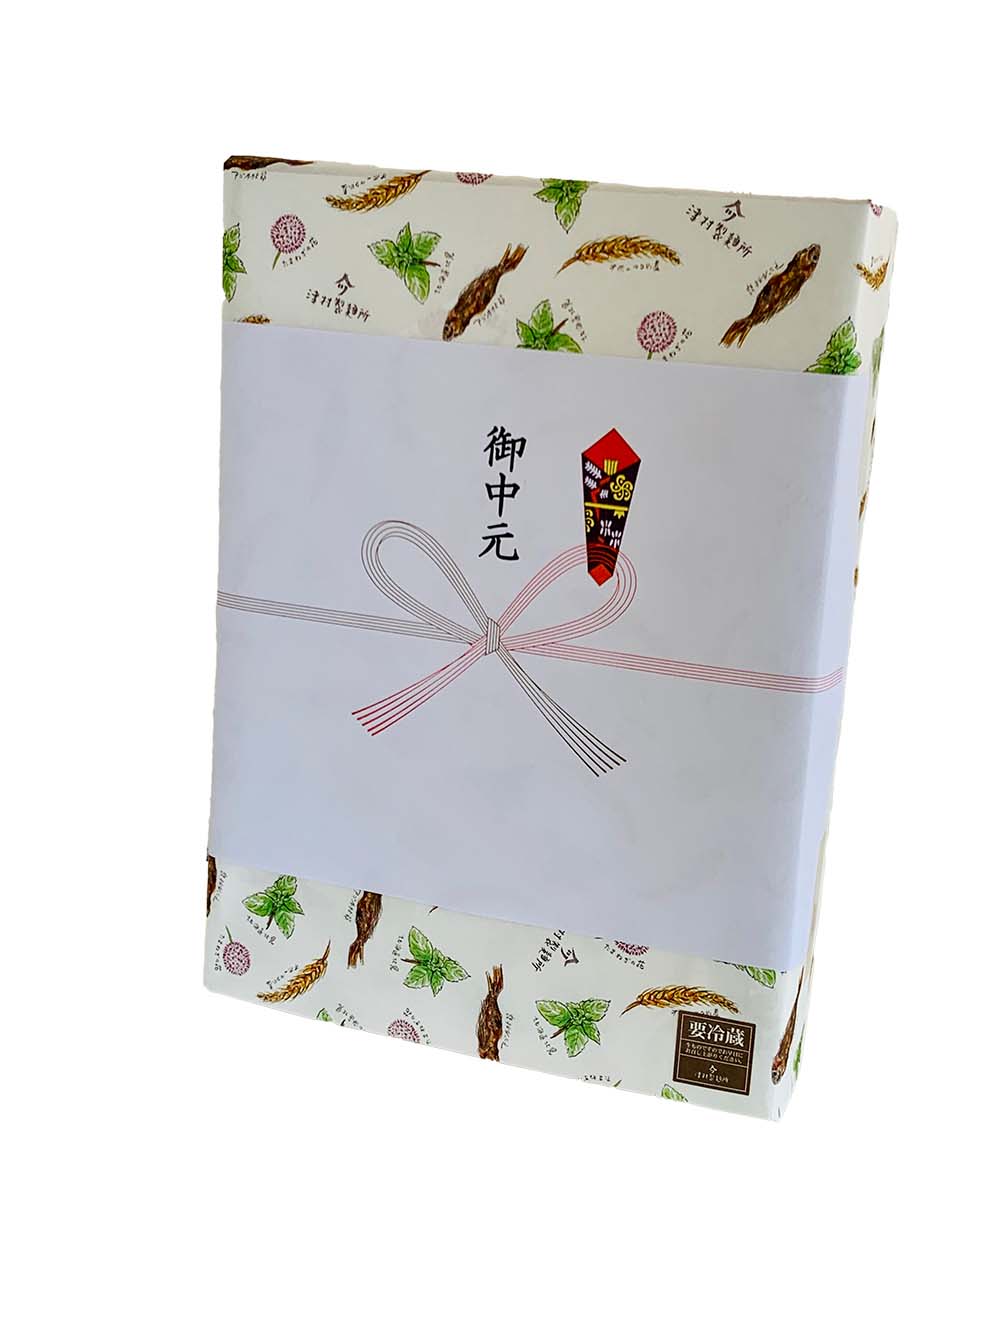 津村製麵所のギフトはお祝い包装・のし付きでご用意できます